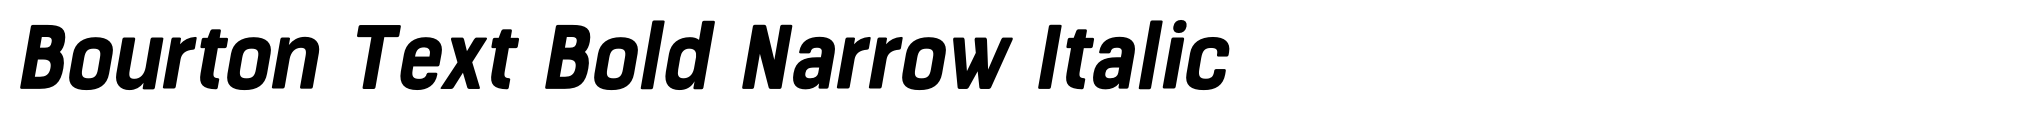 Bourton Text Bold Narrow Italic image